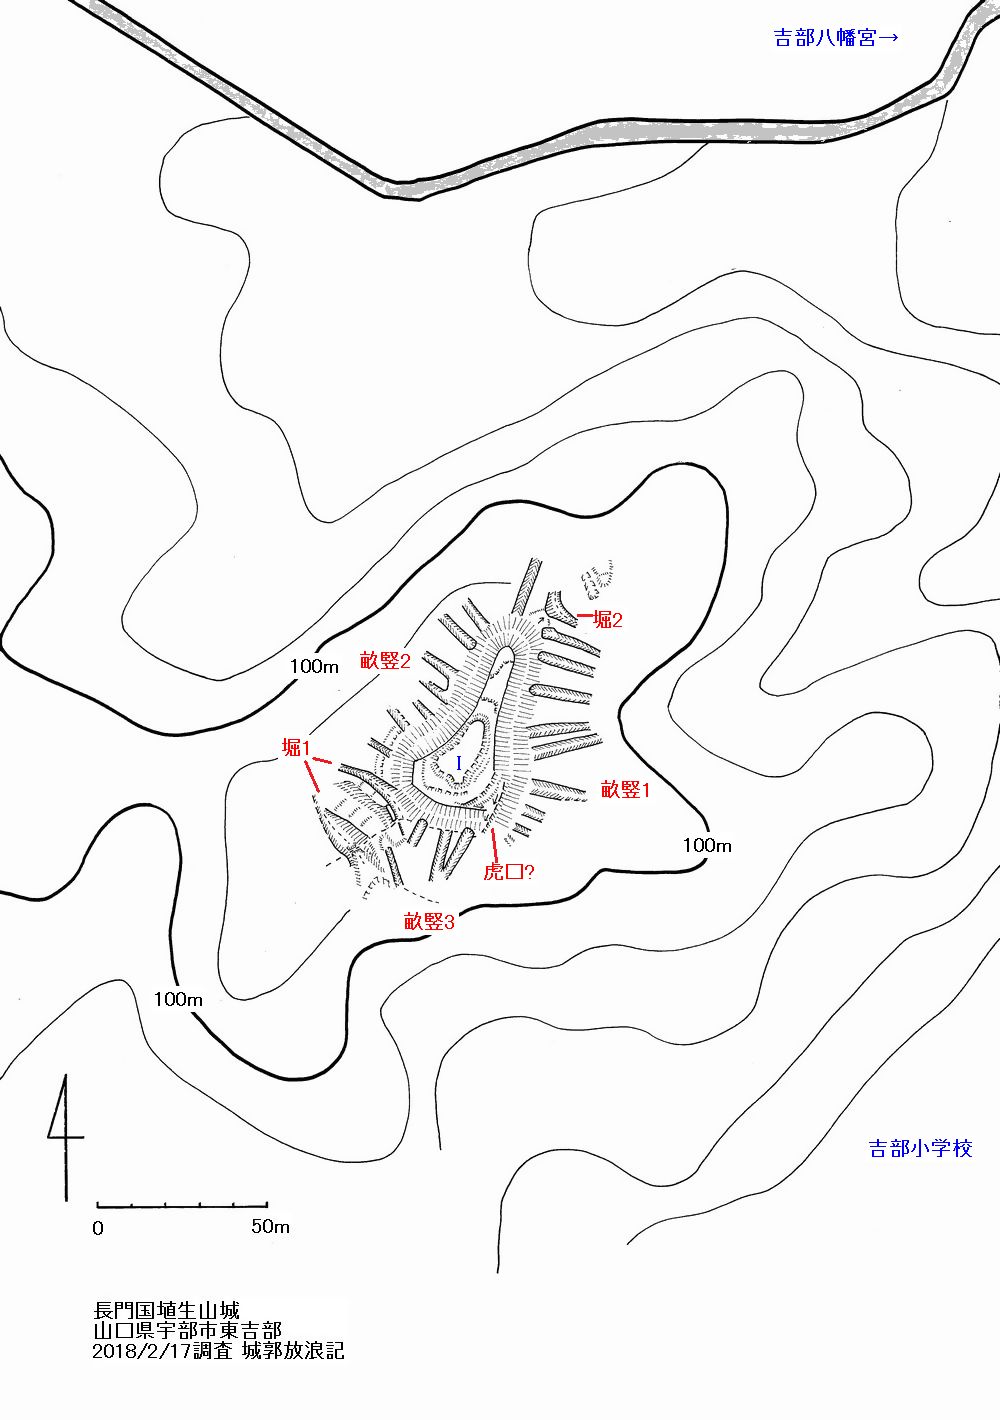 埴生山城縄張図